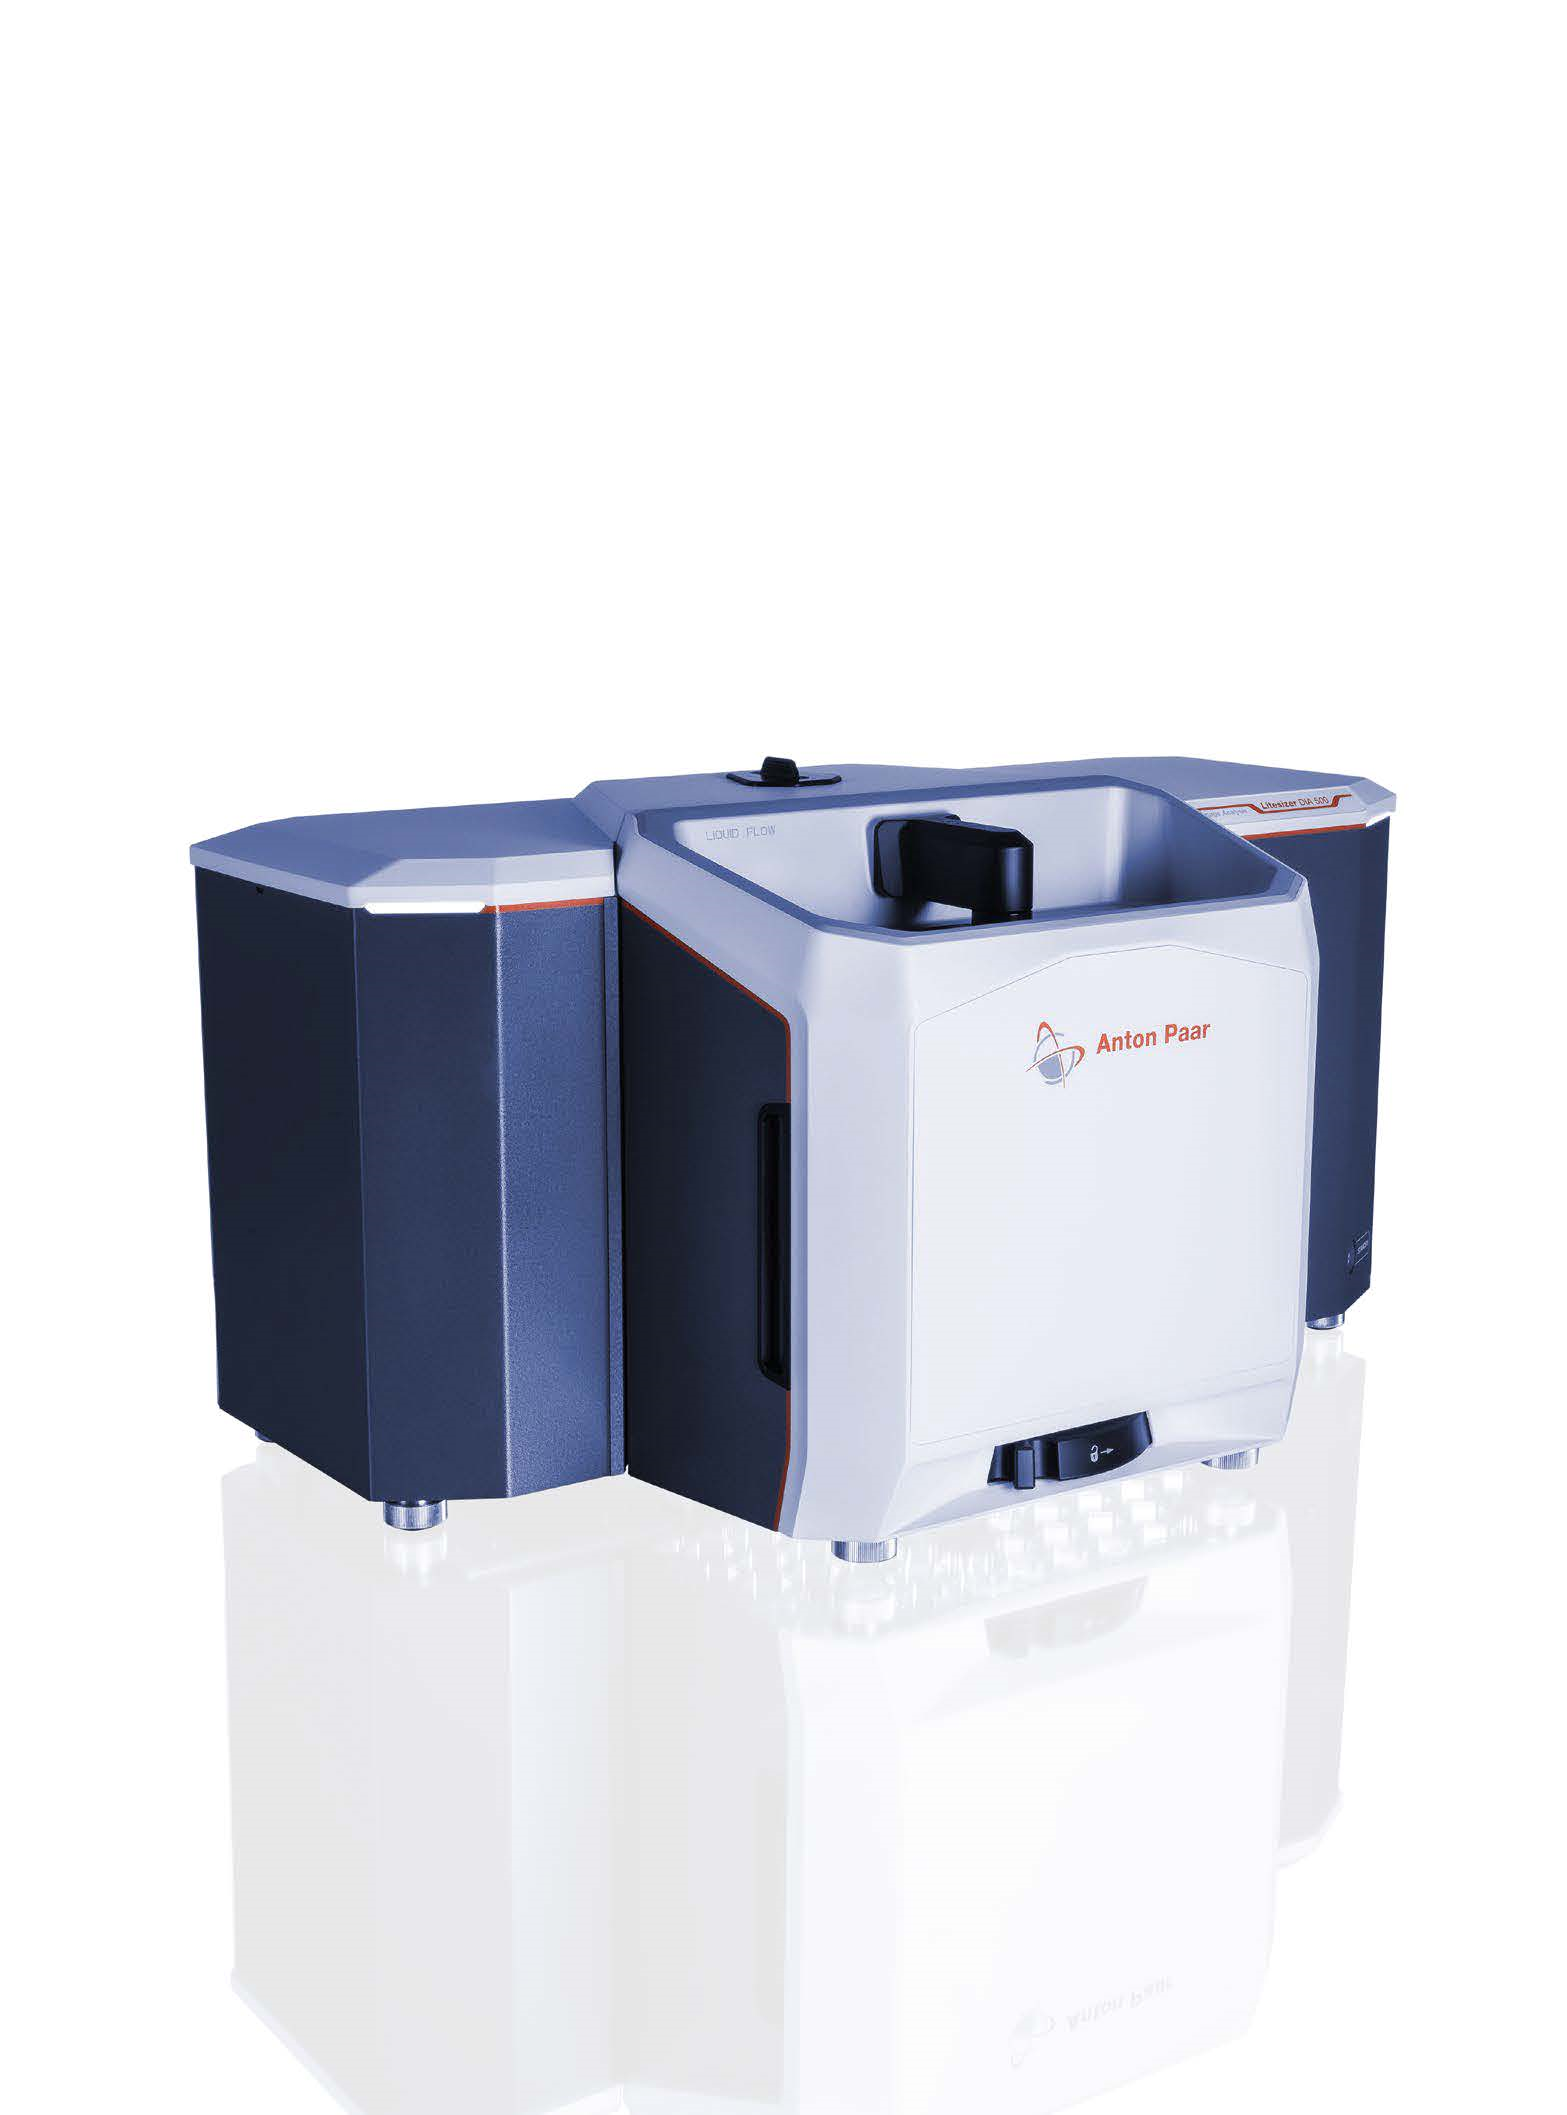 安东帕 Litesizer DIA 500 动态图像法粒度分析仪